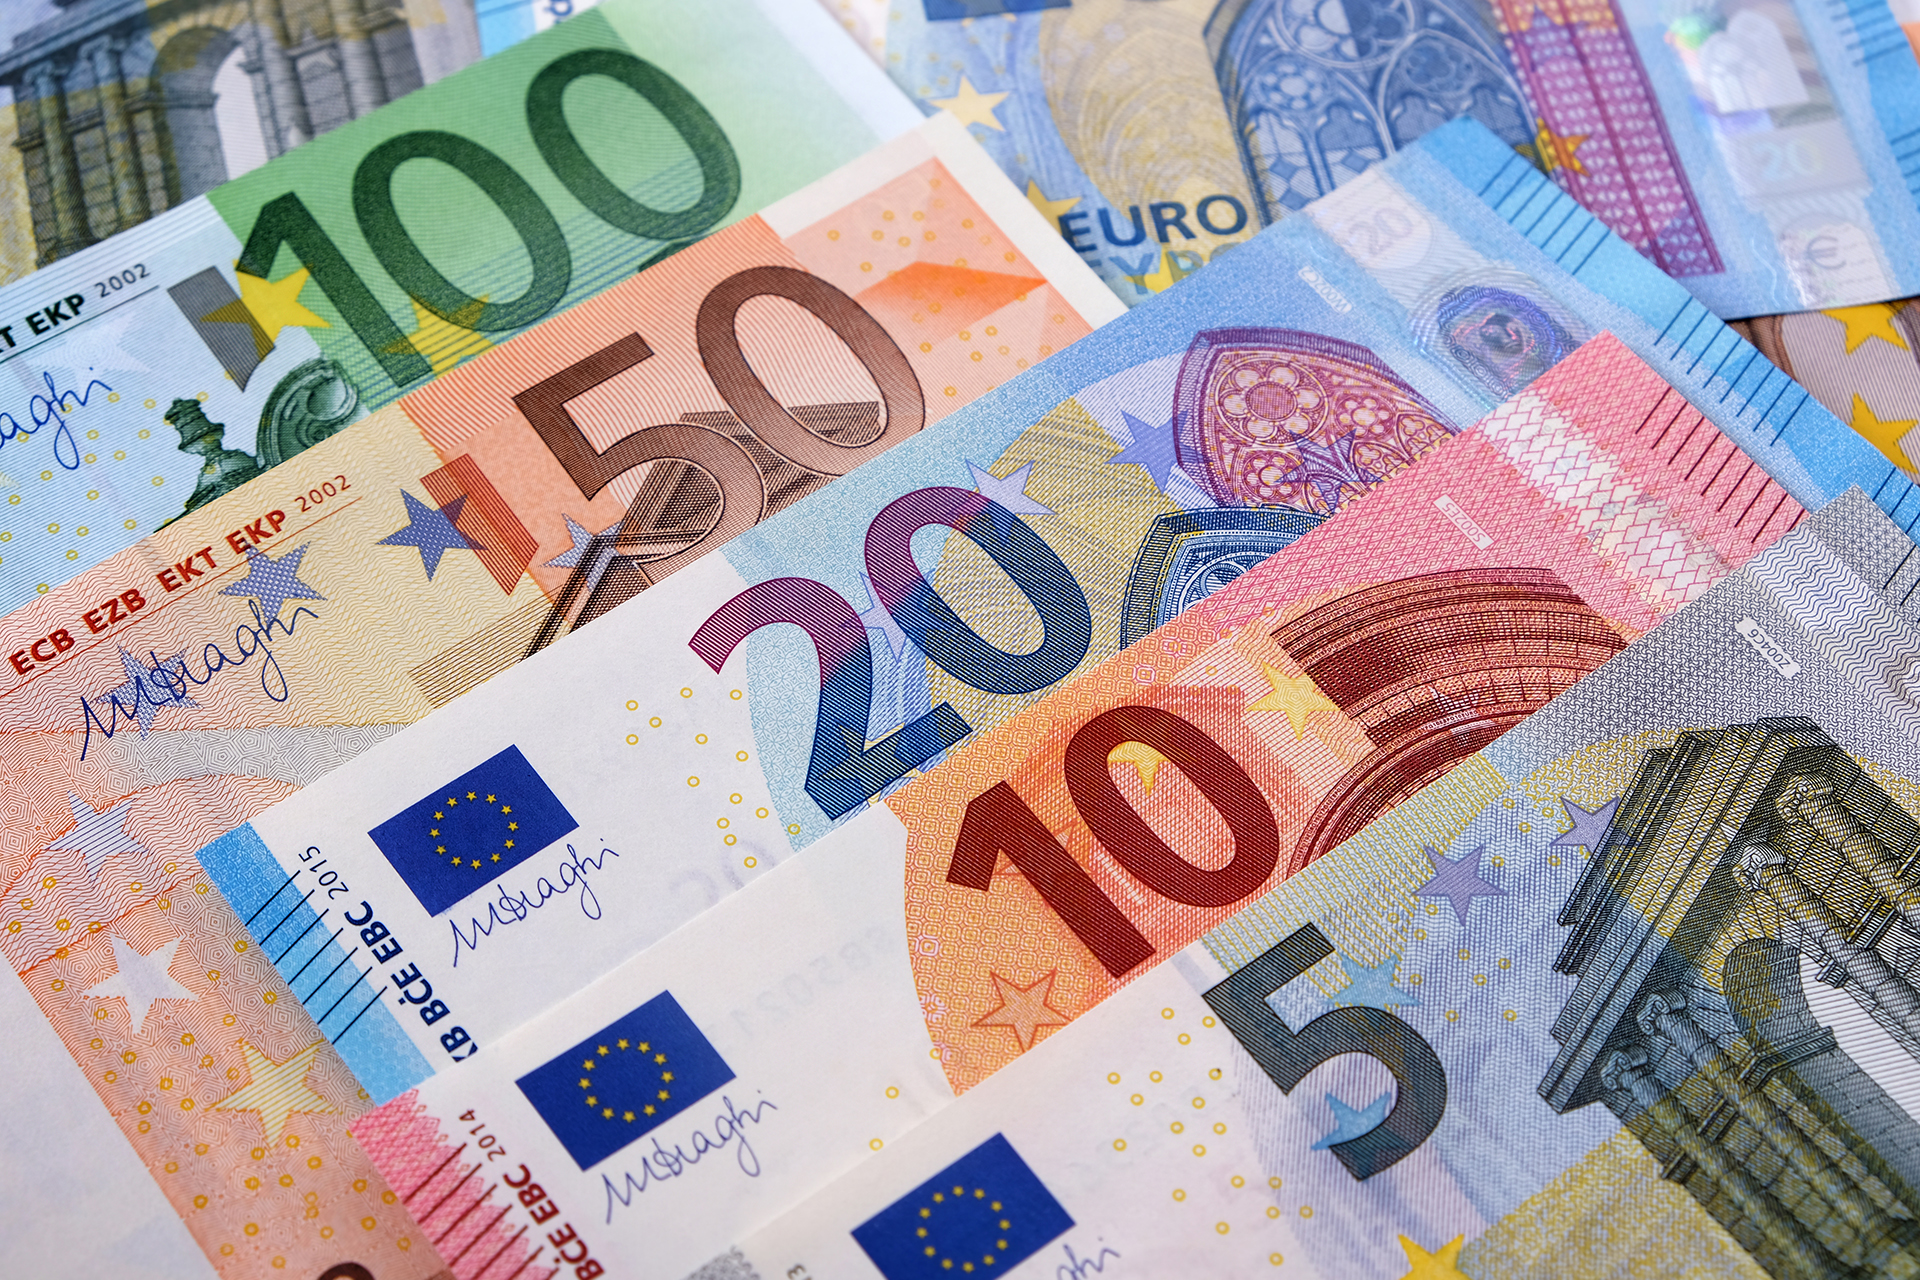 El euro digital tendrá que ser seguro y fácil